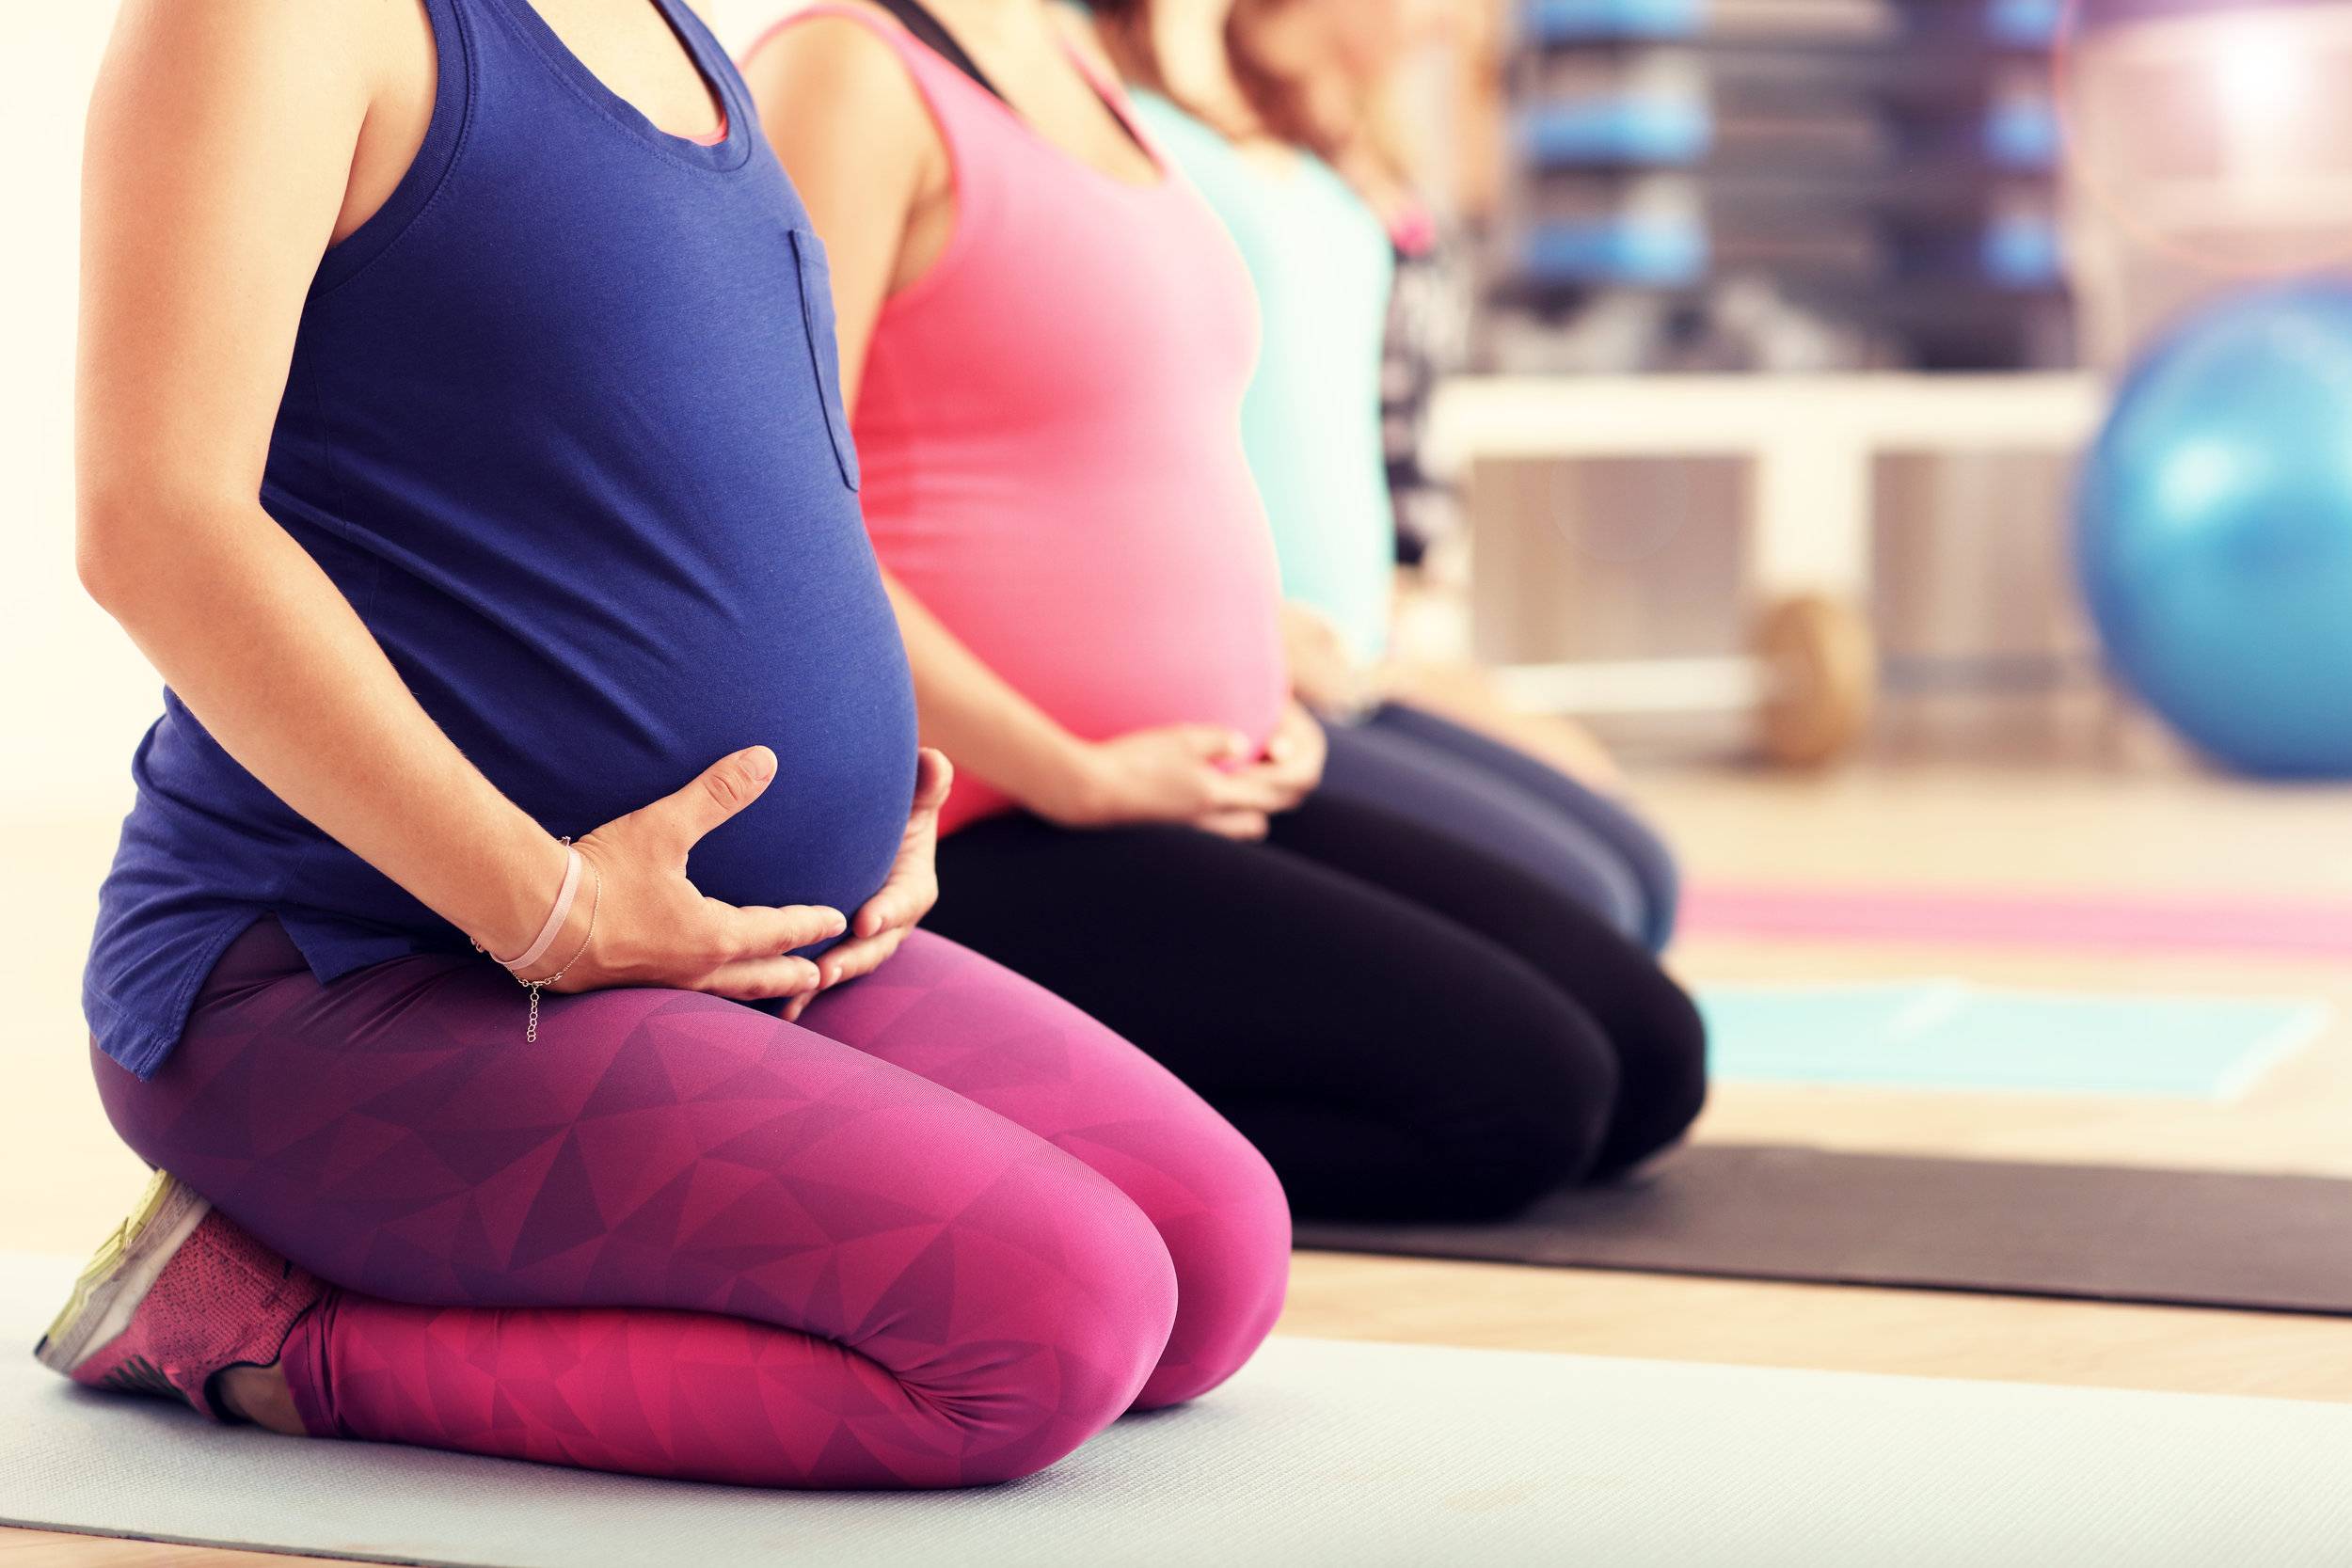 Упражнения для беременных: правила и тренировки для каждого триместра